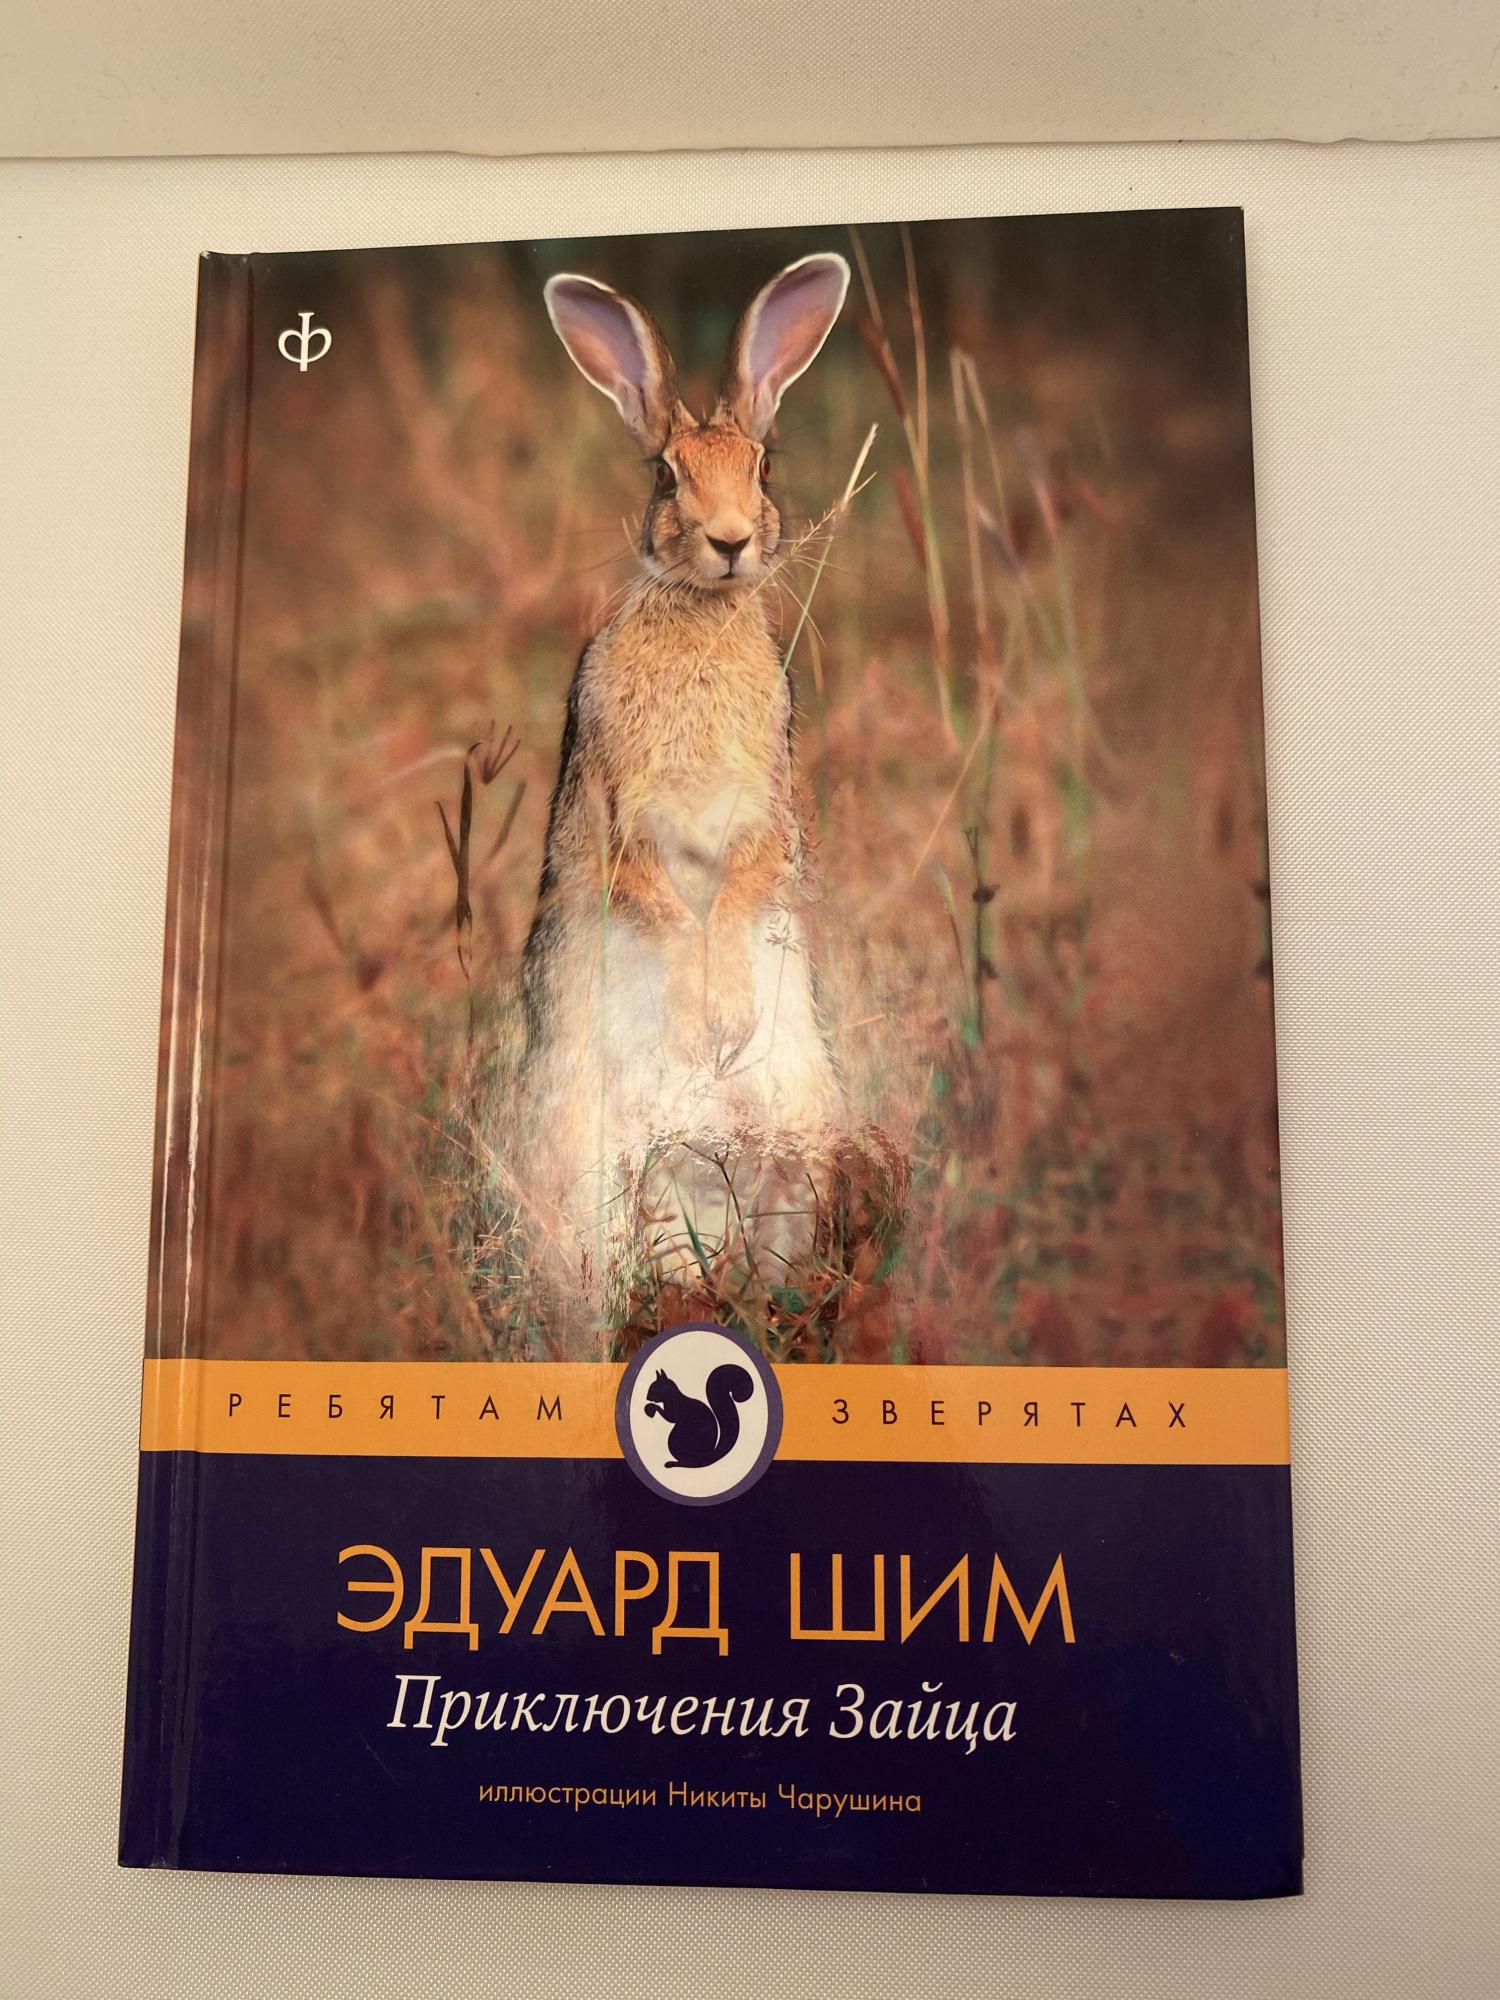 Эдуард ШИМ приключения зайца